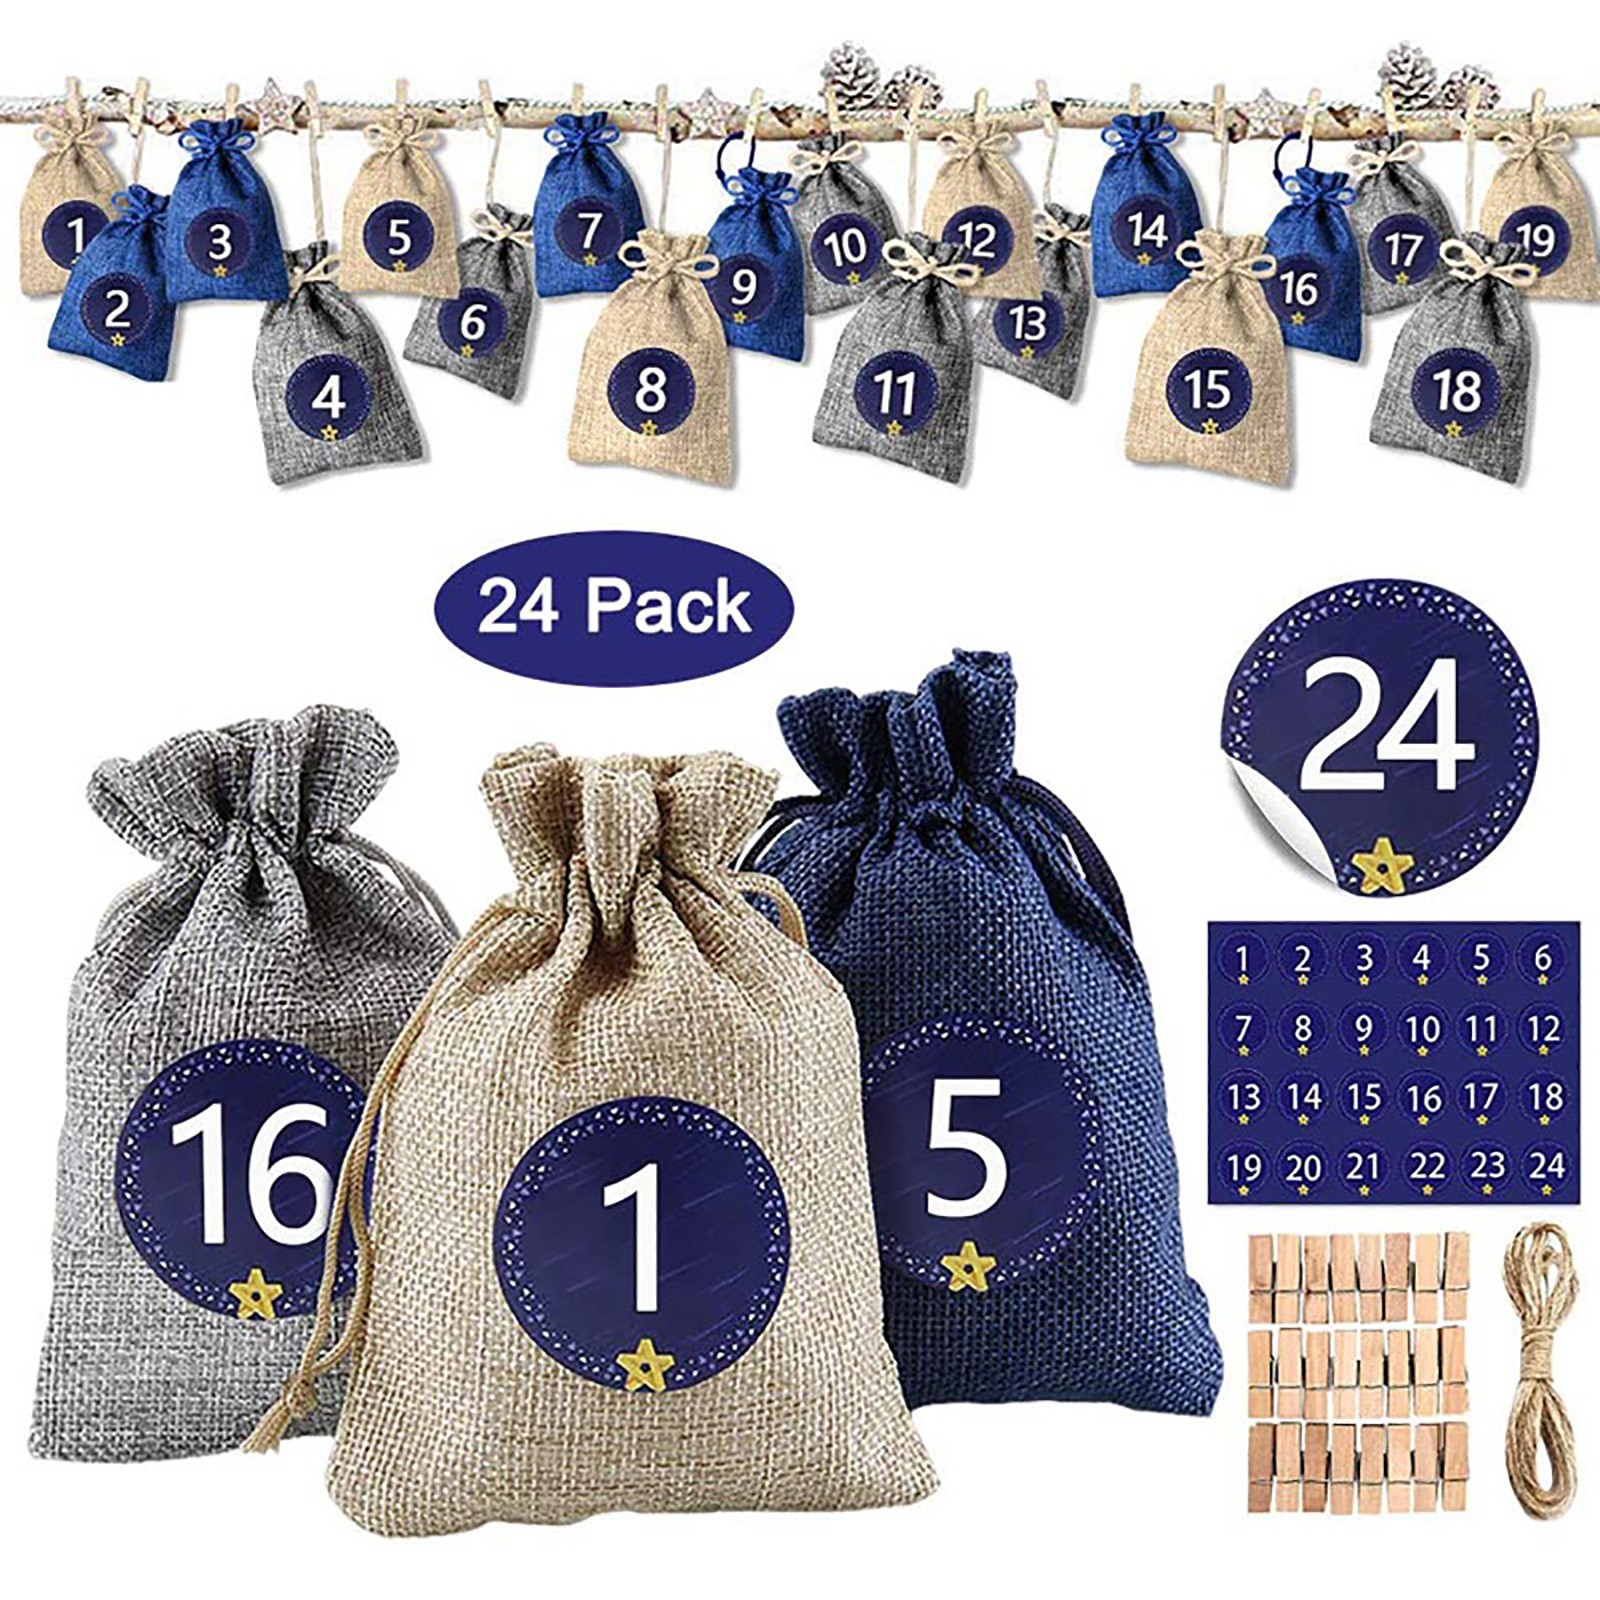 24 Sac en tissu rempli de calendrier de l'Avent, 24 Sac-cadeaux de Noël de l'Avent Day avec 1-24 Advent Numéro Stickers Christmas Calendar Decor